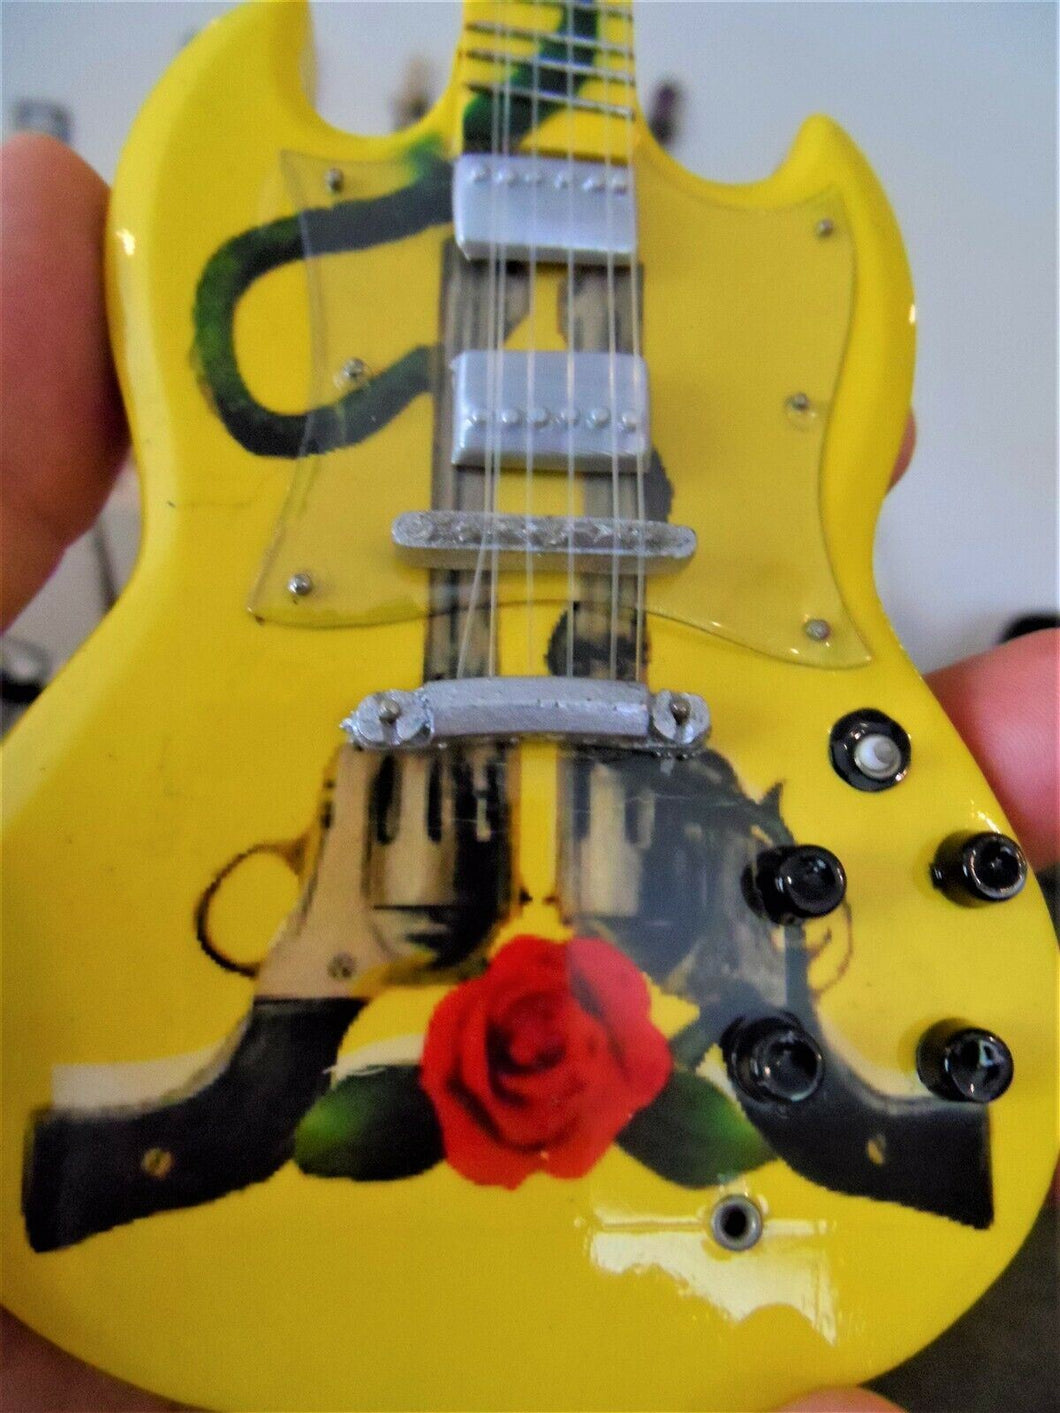 Guns 'n' Roses Tribute Guitar 1:4 Scale Replica Guitar ~New~